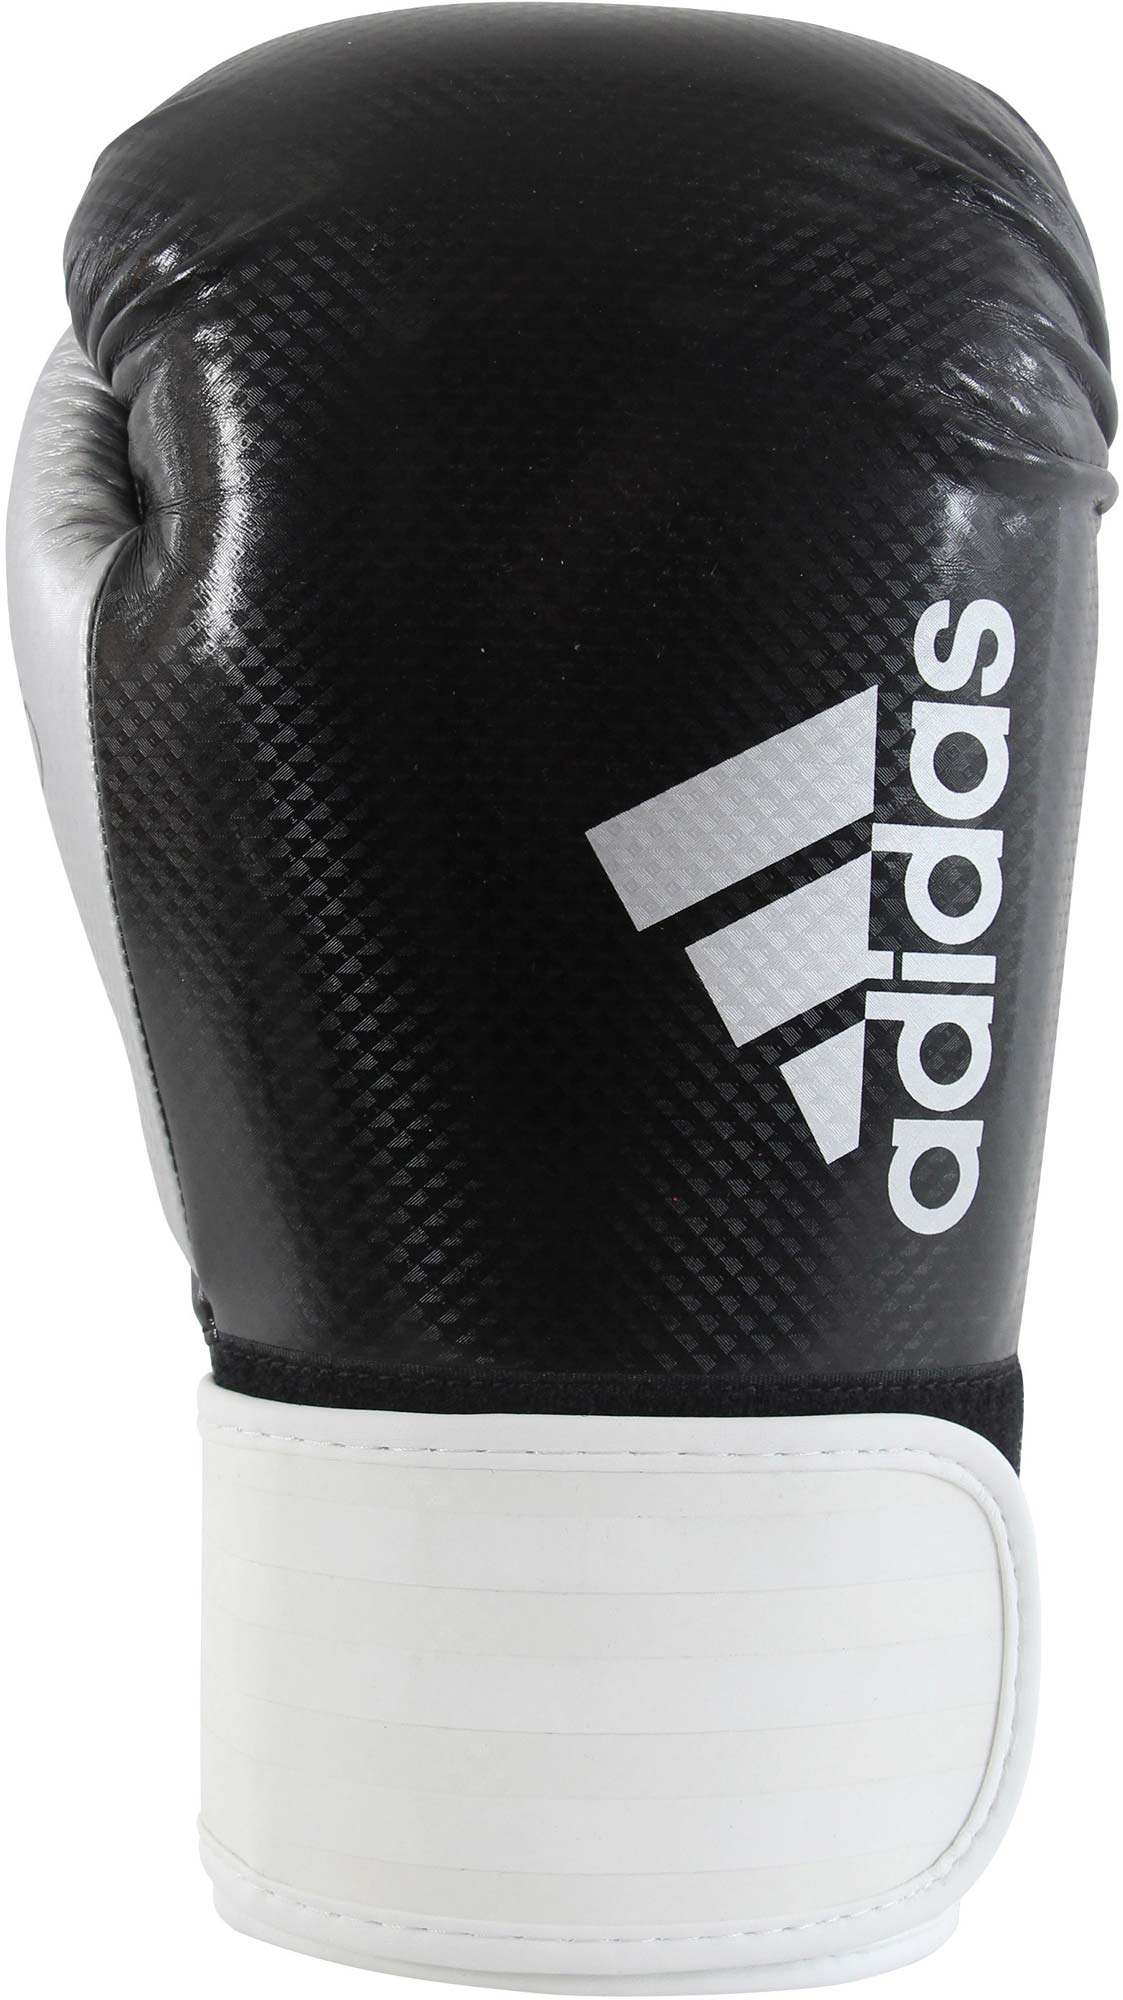 Pánské boxerské rukavice